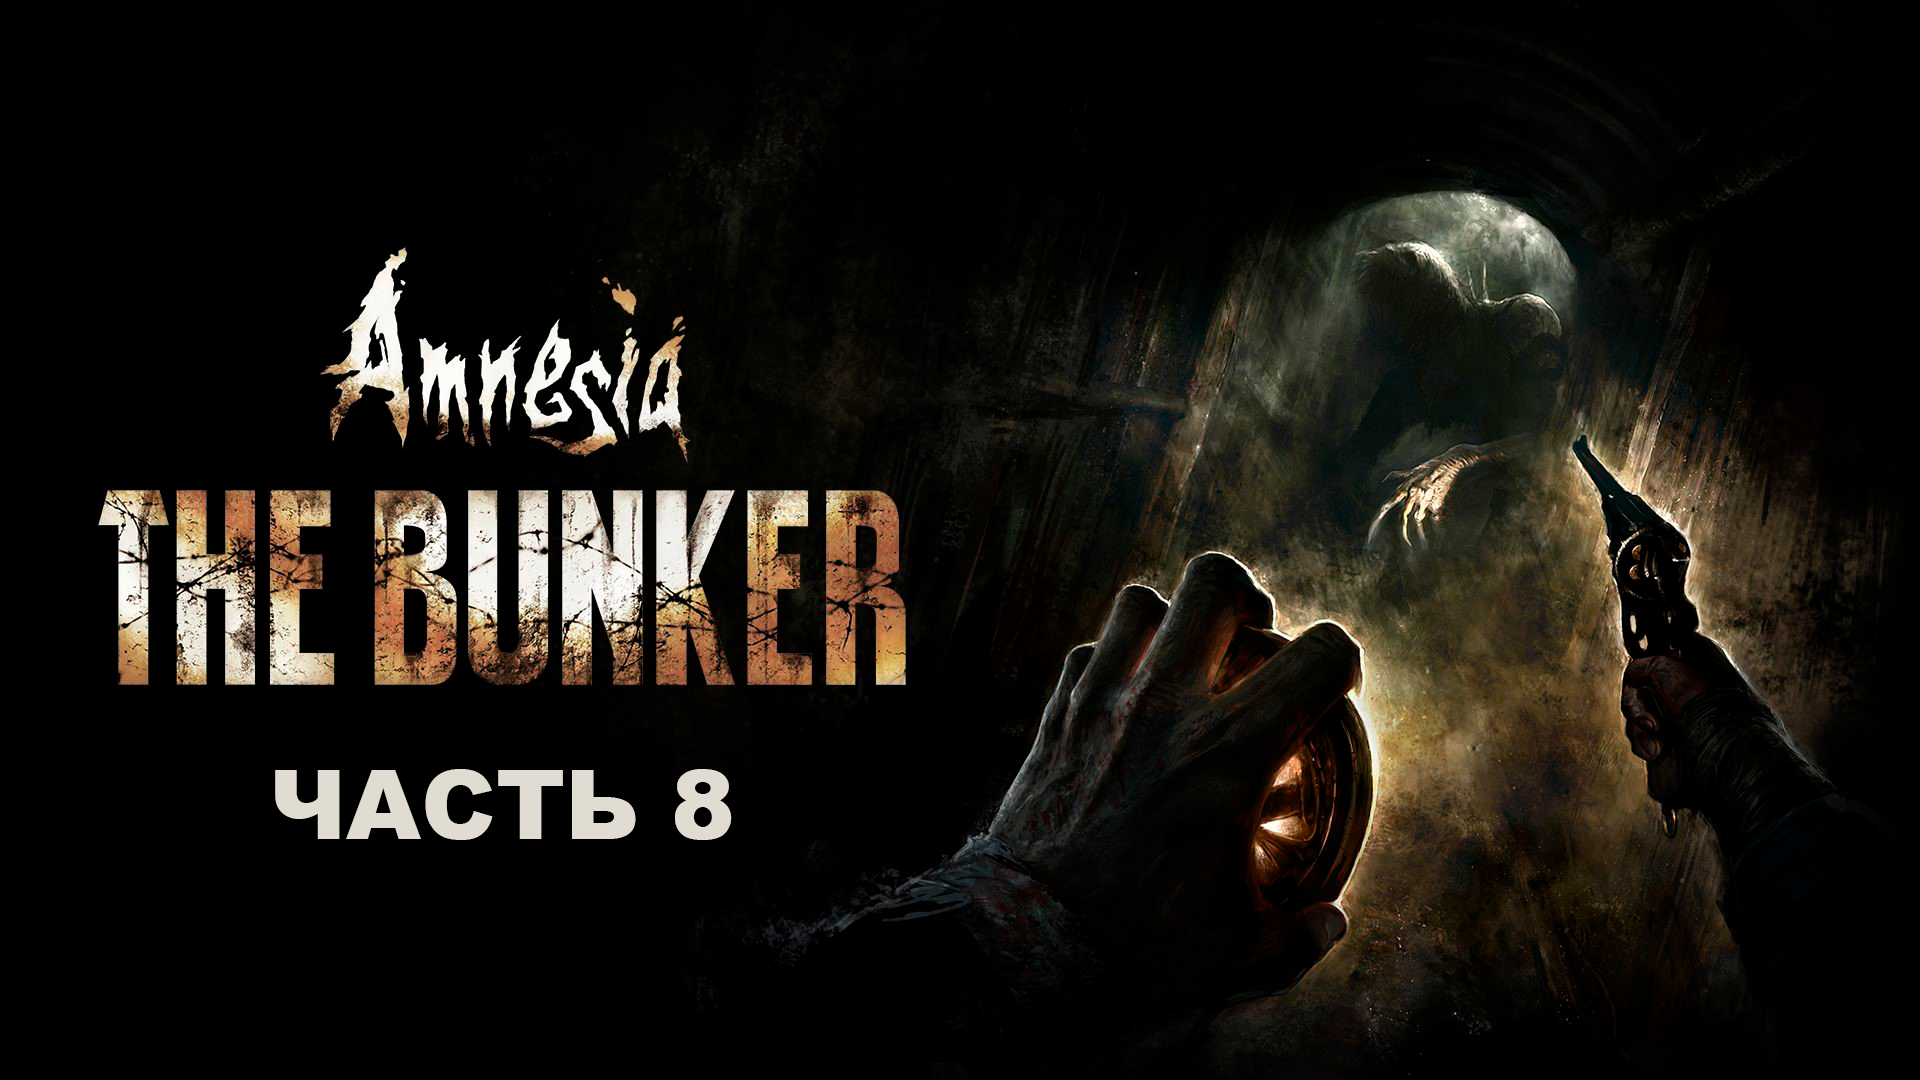 Прохождение Amnesia The Bunker. Часть 8.